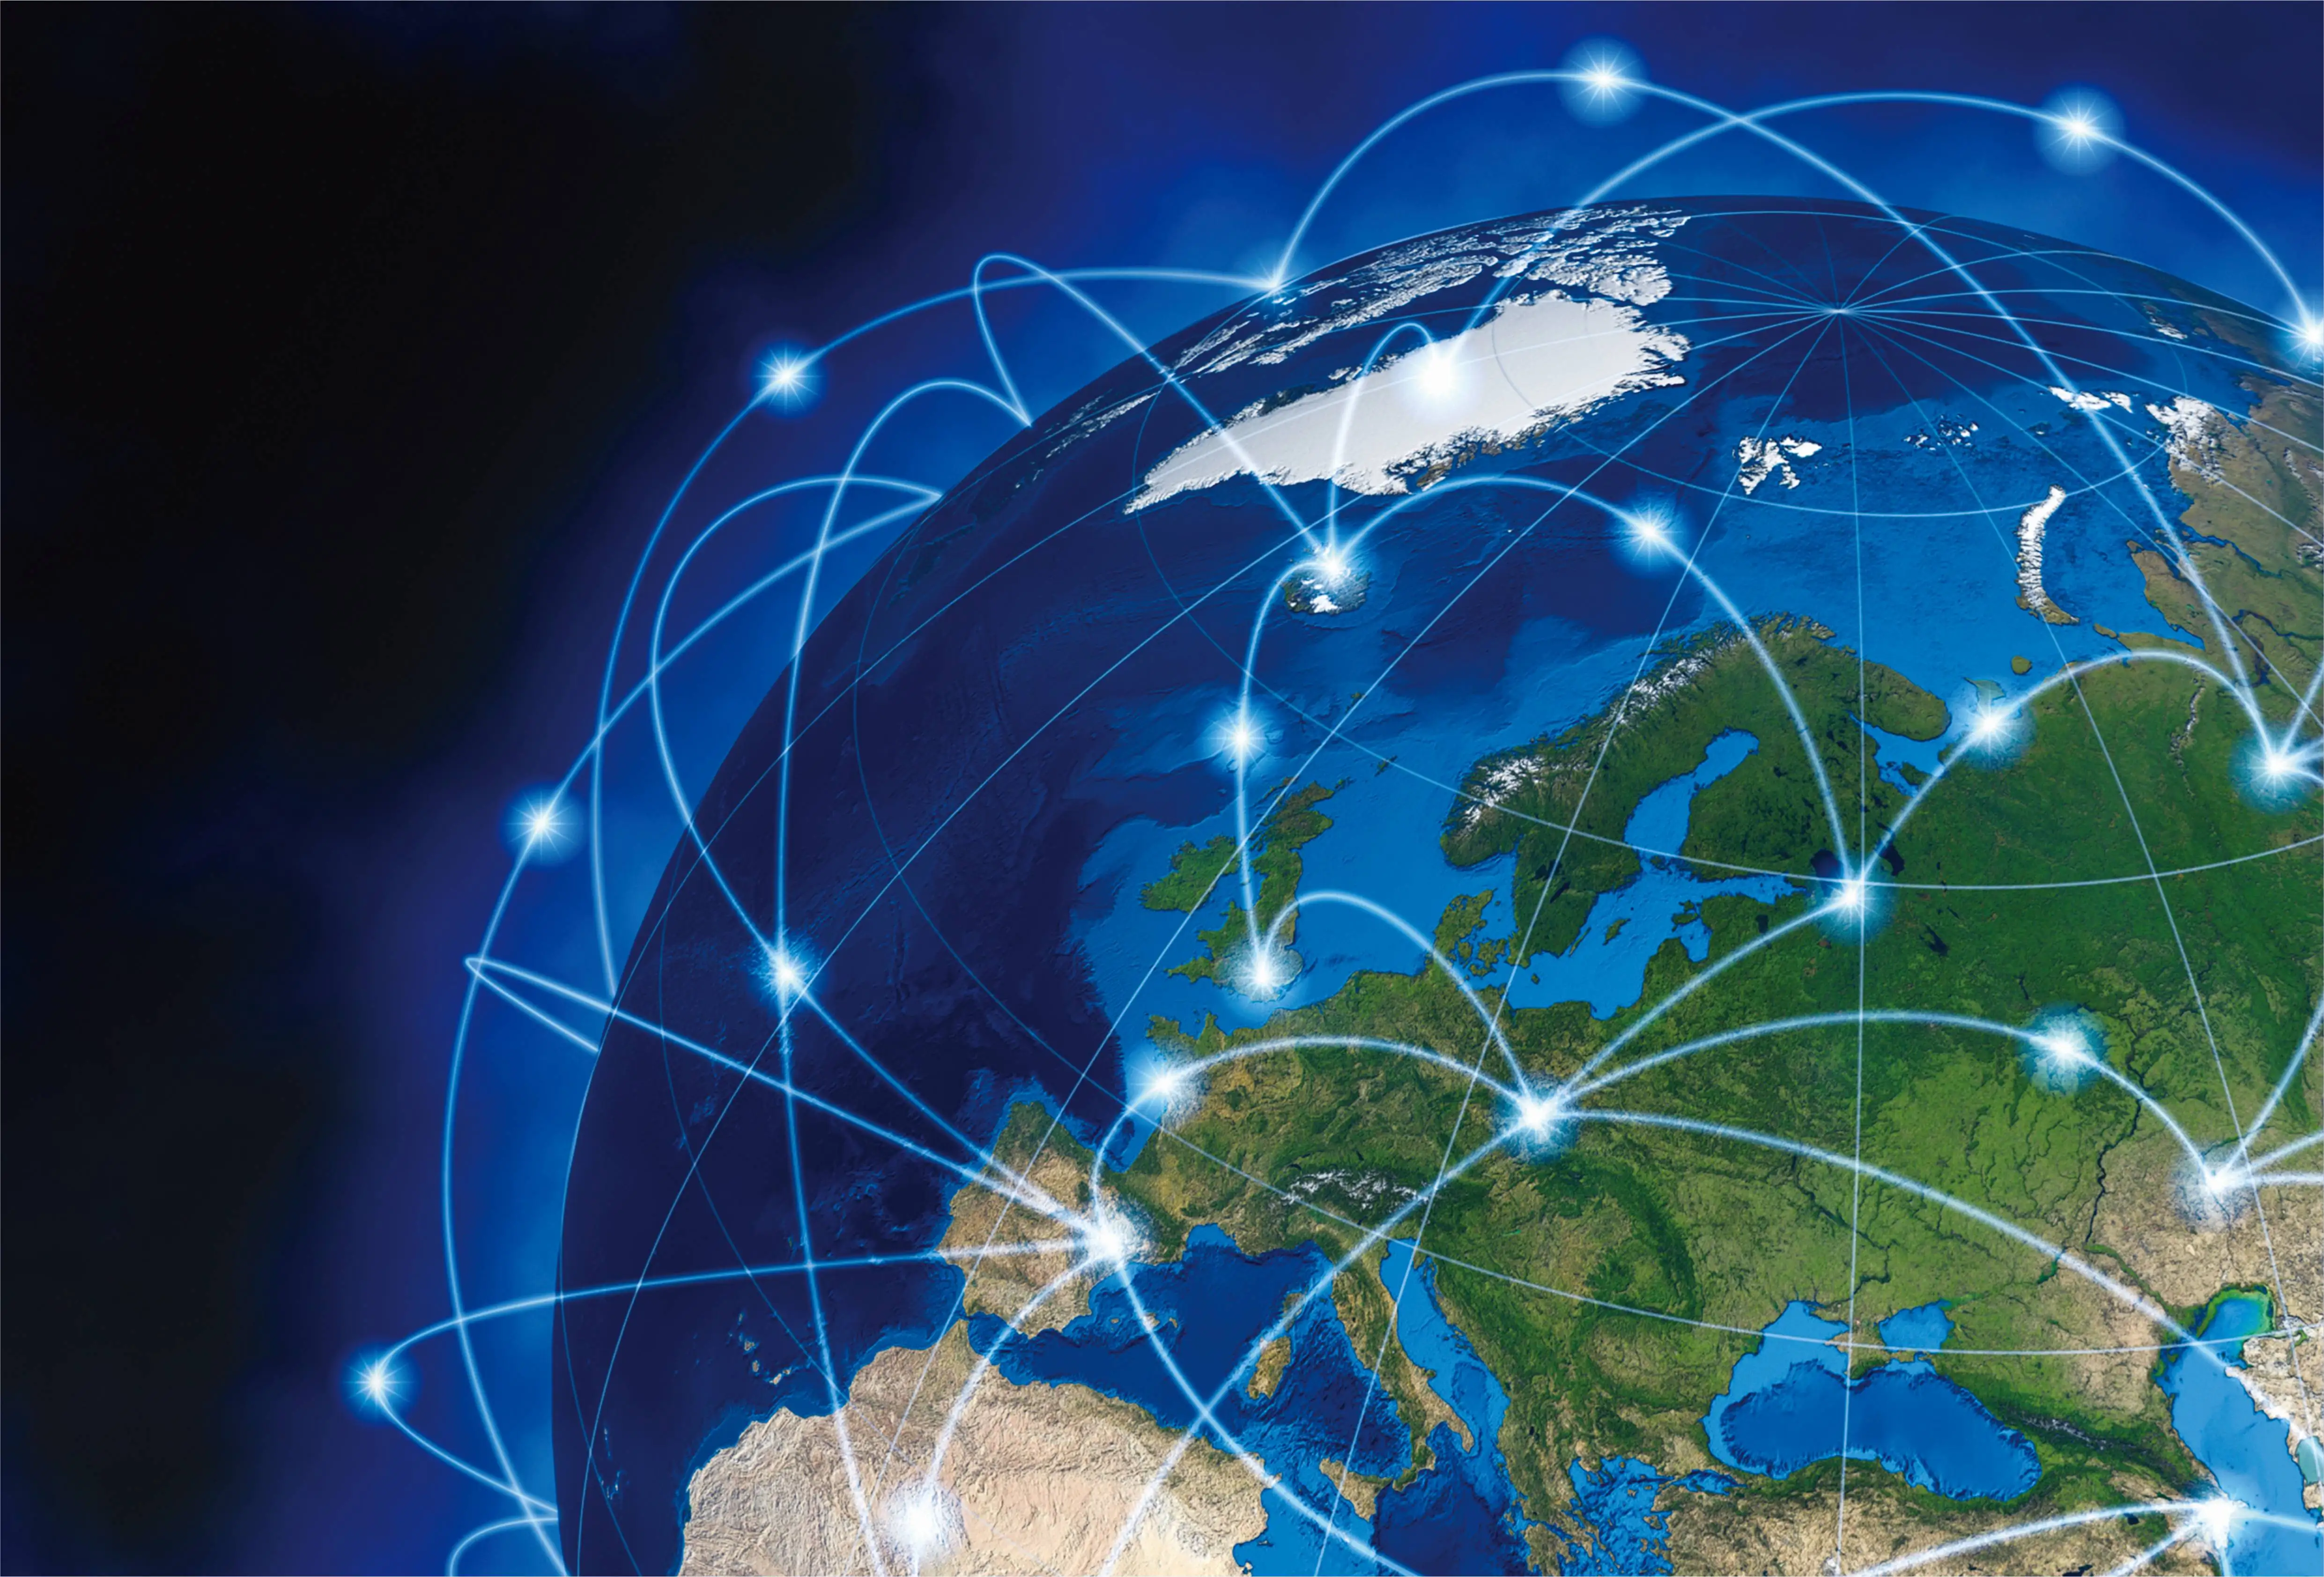 Международная телекоммуникационная сеть